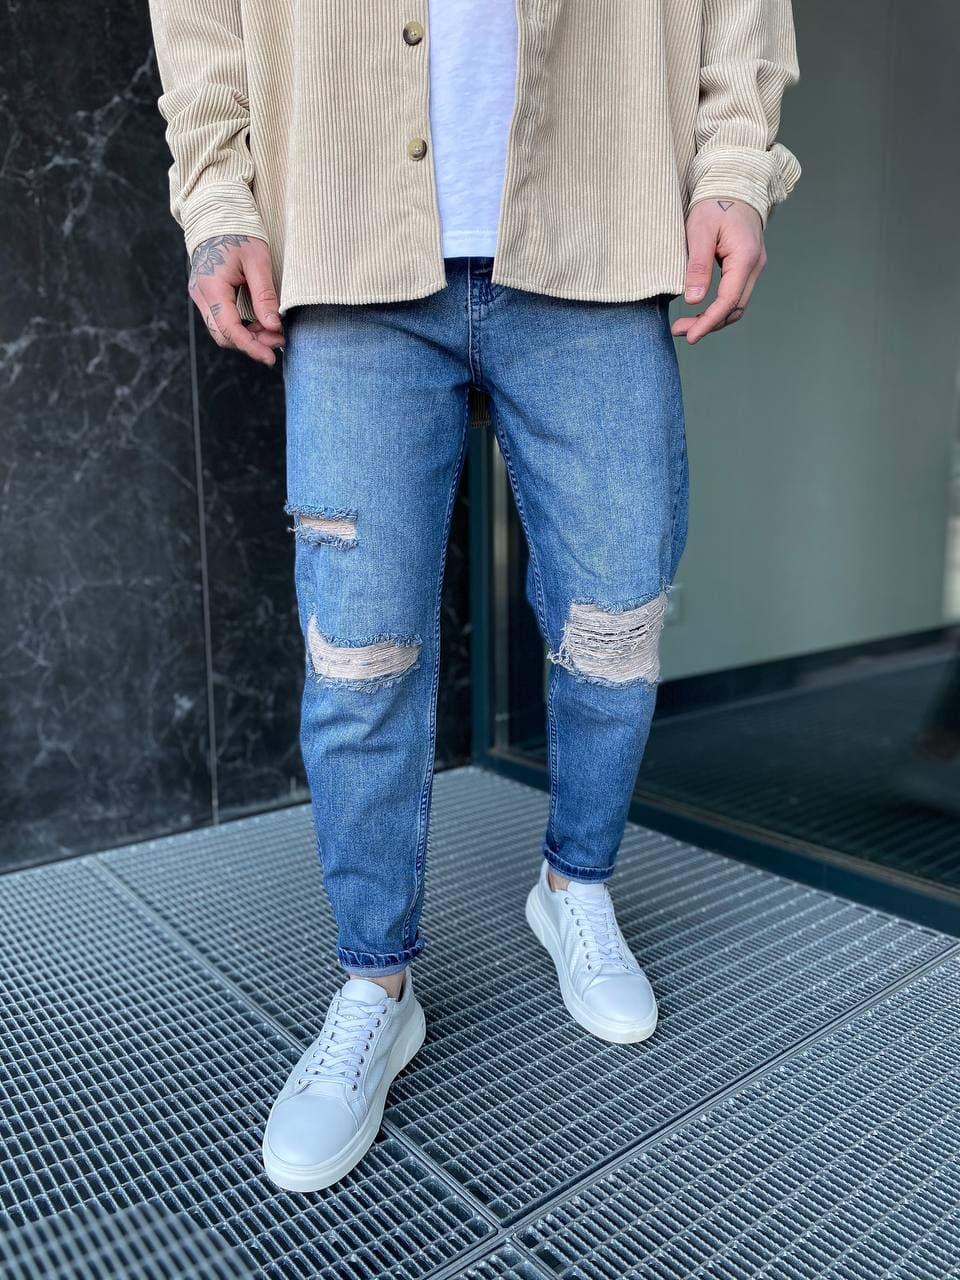 

Мужские стильные качественные джинсы МОМ (синие). Мужские турецкие джинсы 30